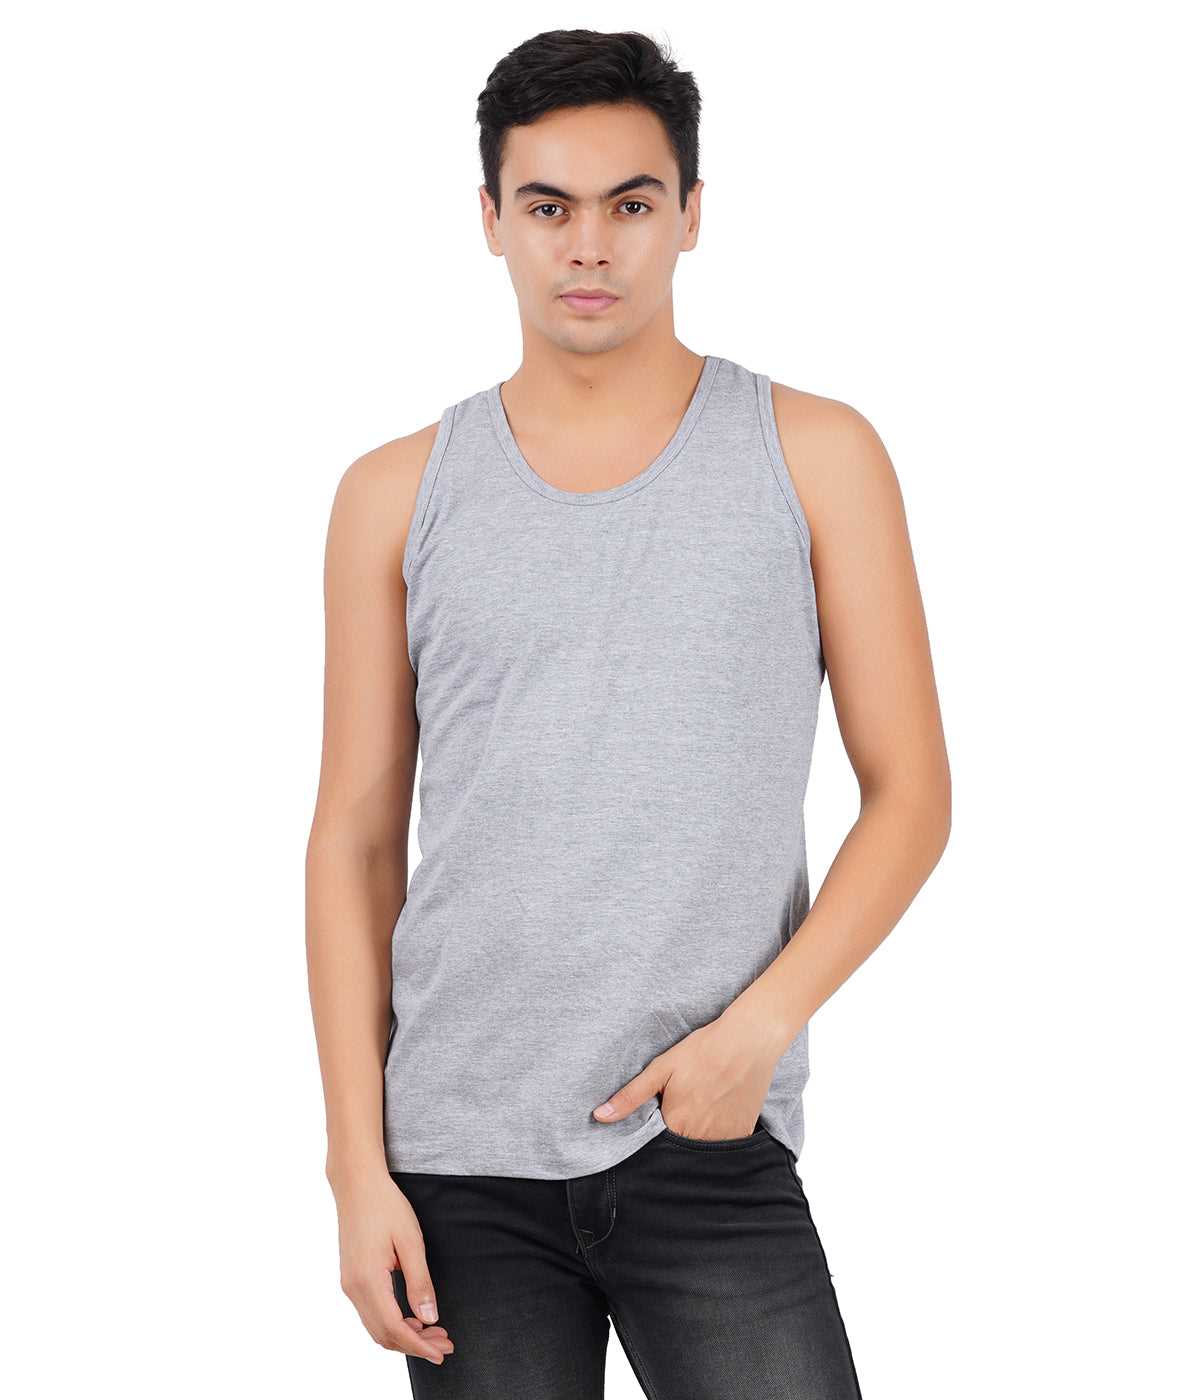 Get sleeveless t-shirt online